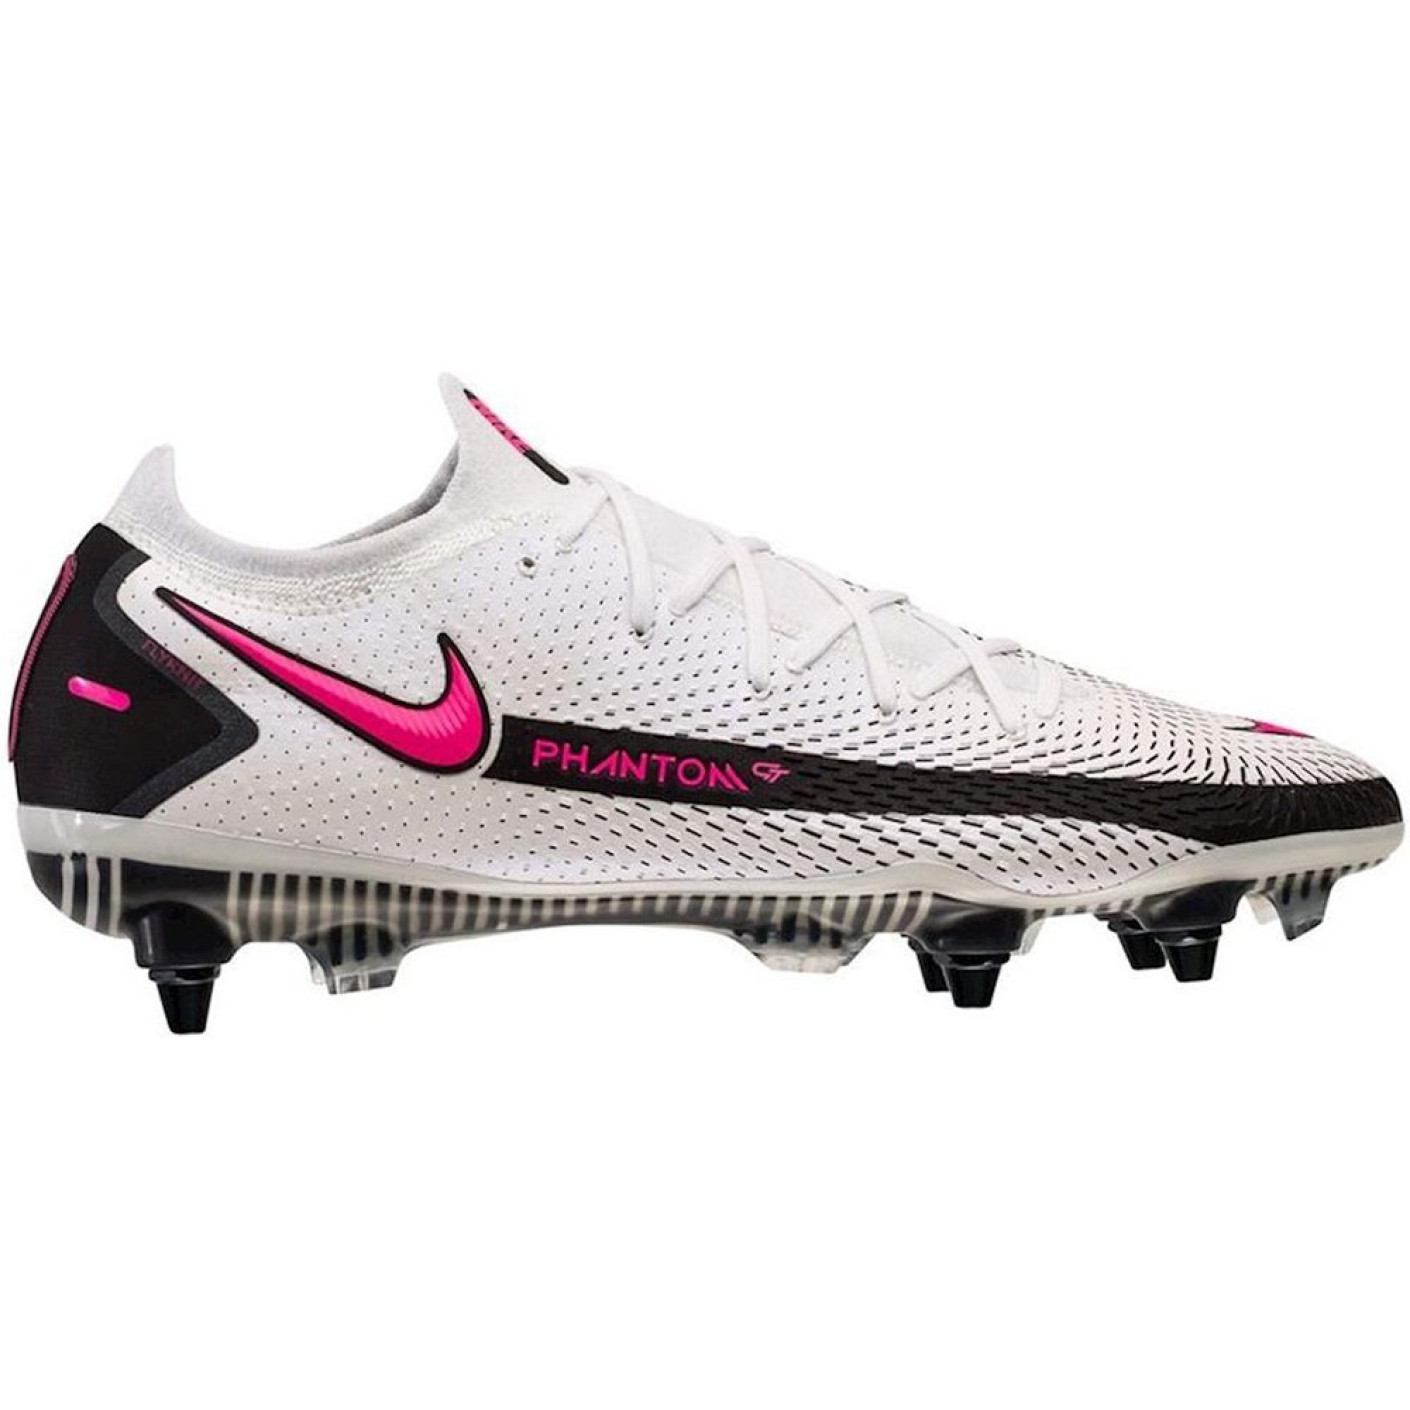 Nike PHANTOM GT ELITE Ijzeren-Nop Voetbalschoenen Anti-Clog (SG) Wit Roze Zwart